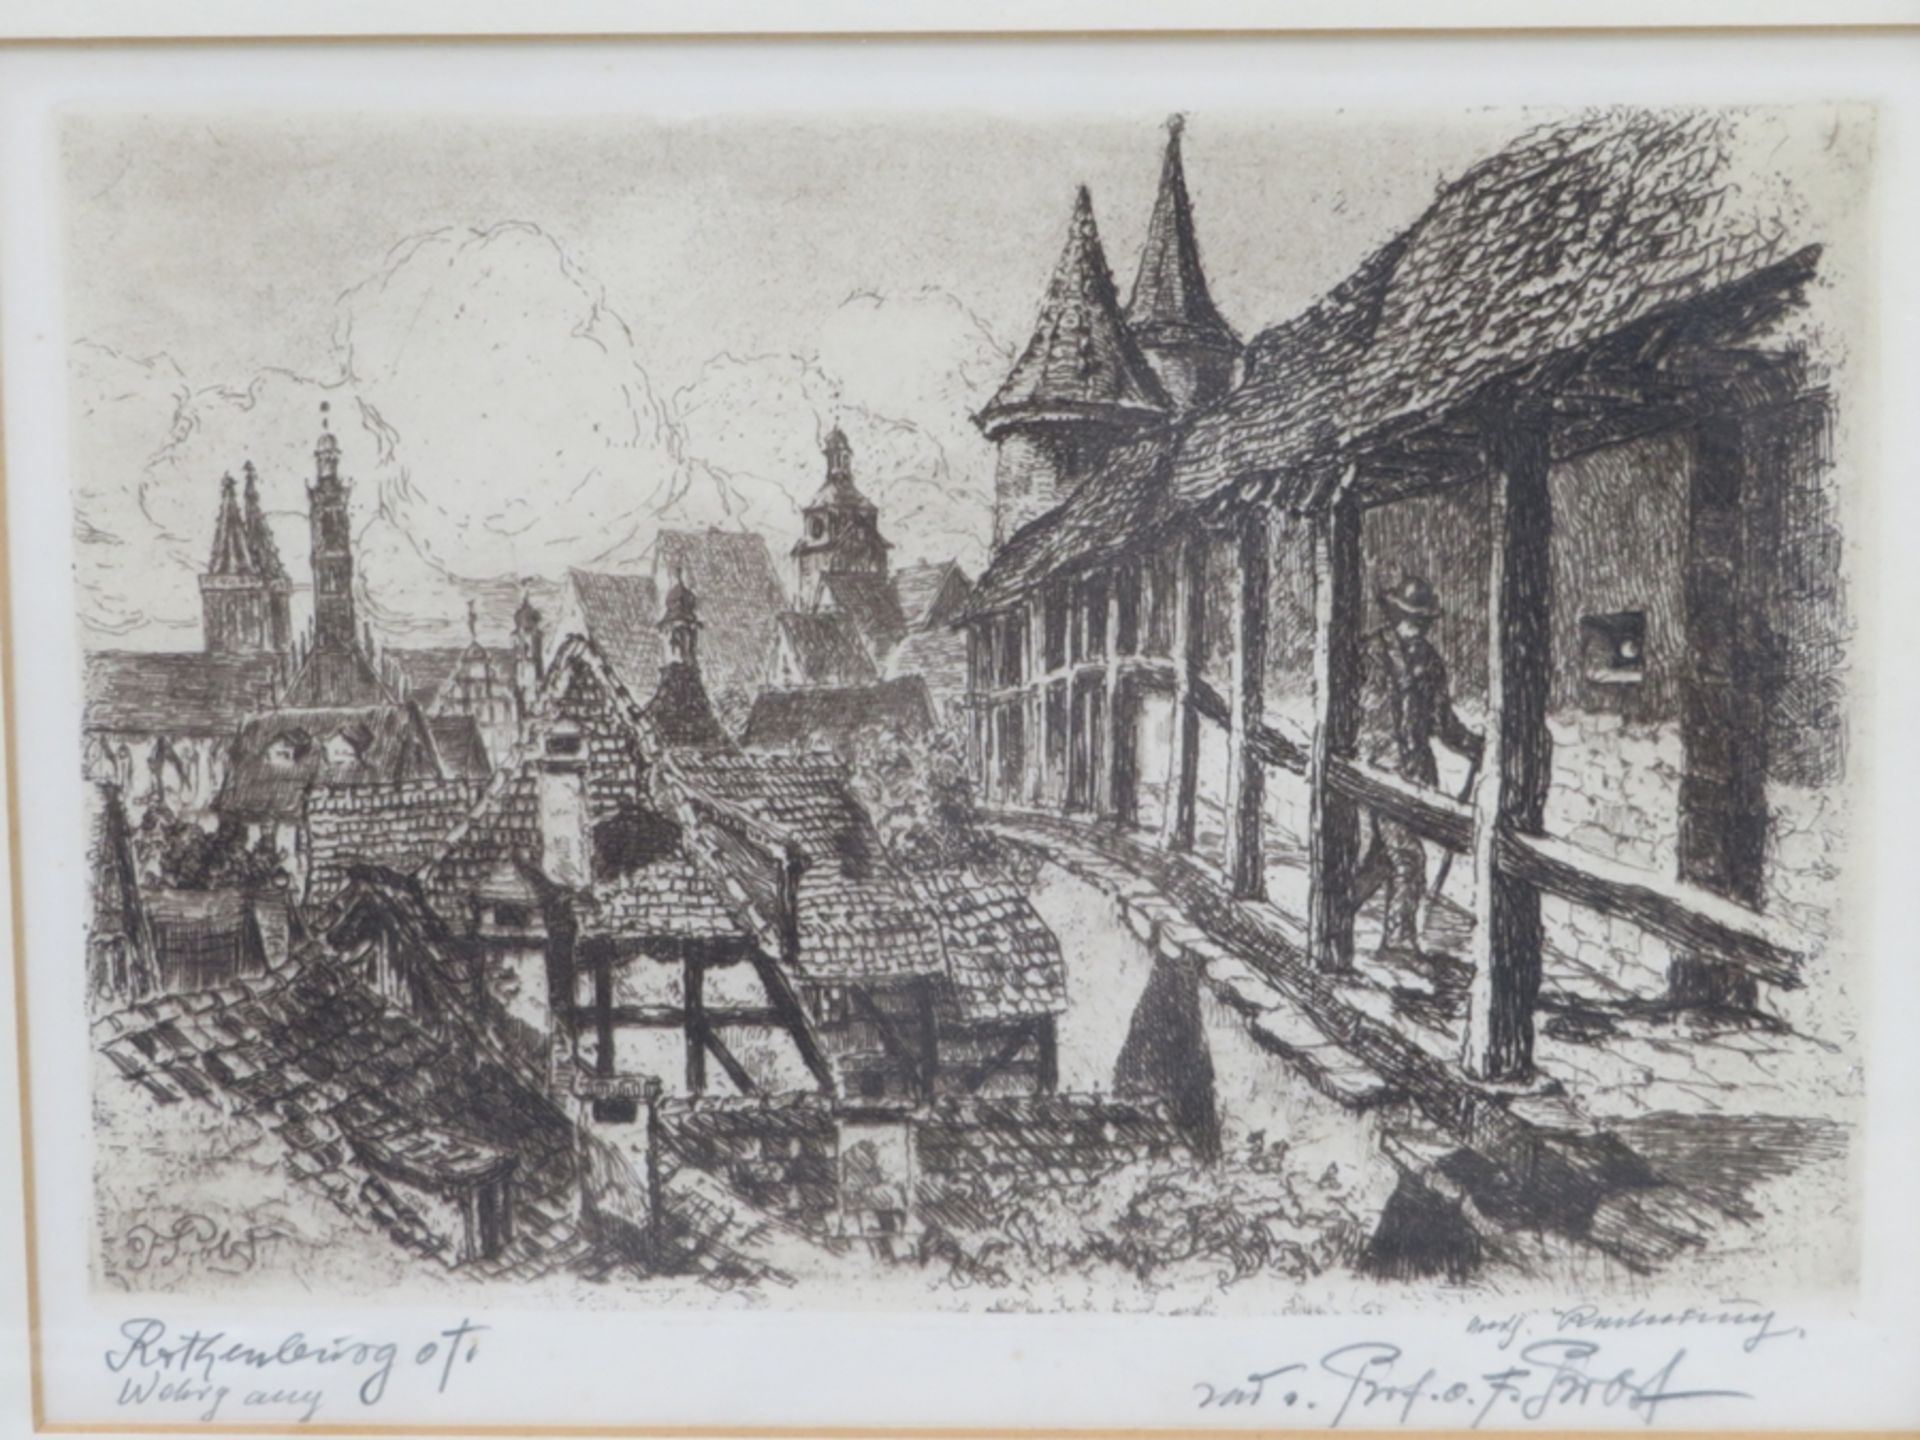 Prolst, O.F., "Rothenburg ob der Tauber", 2 Radierungen, 15 x 22 cm, R. [31 x 36 cm]